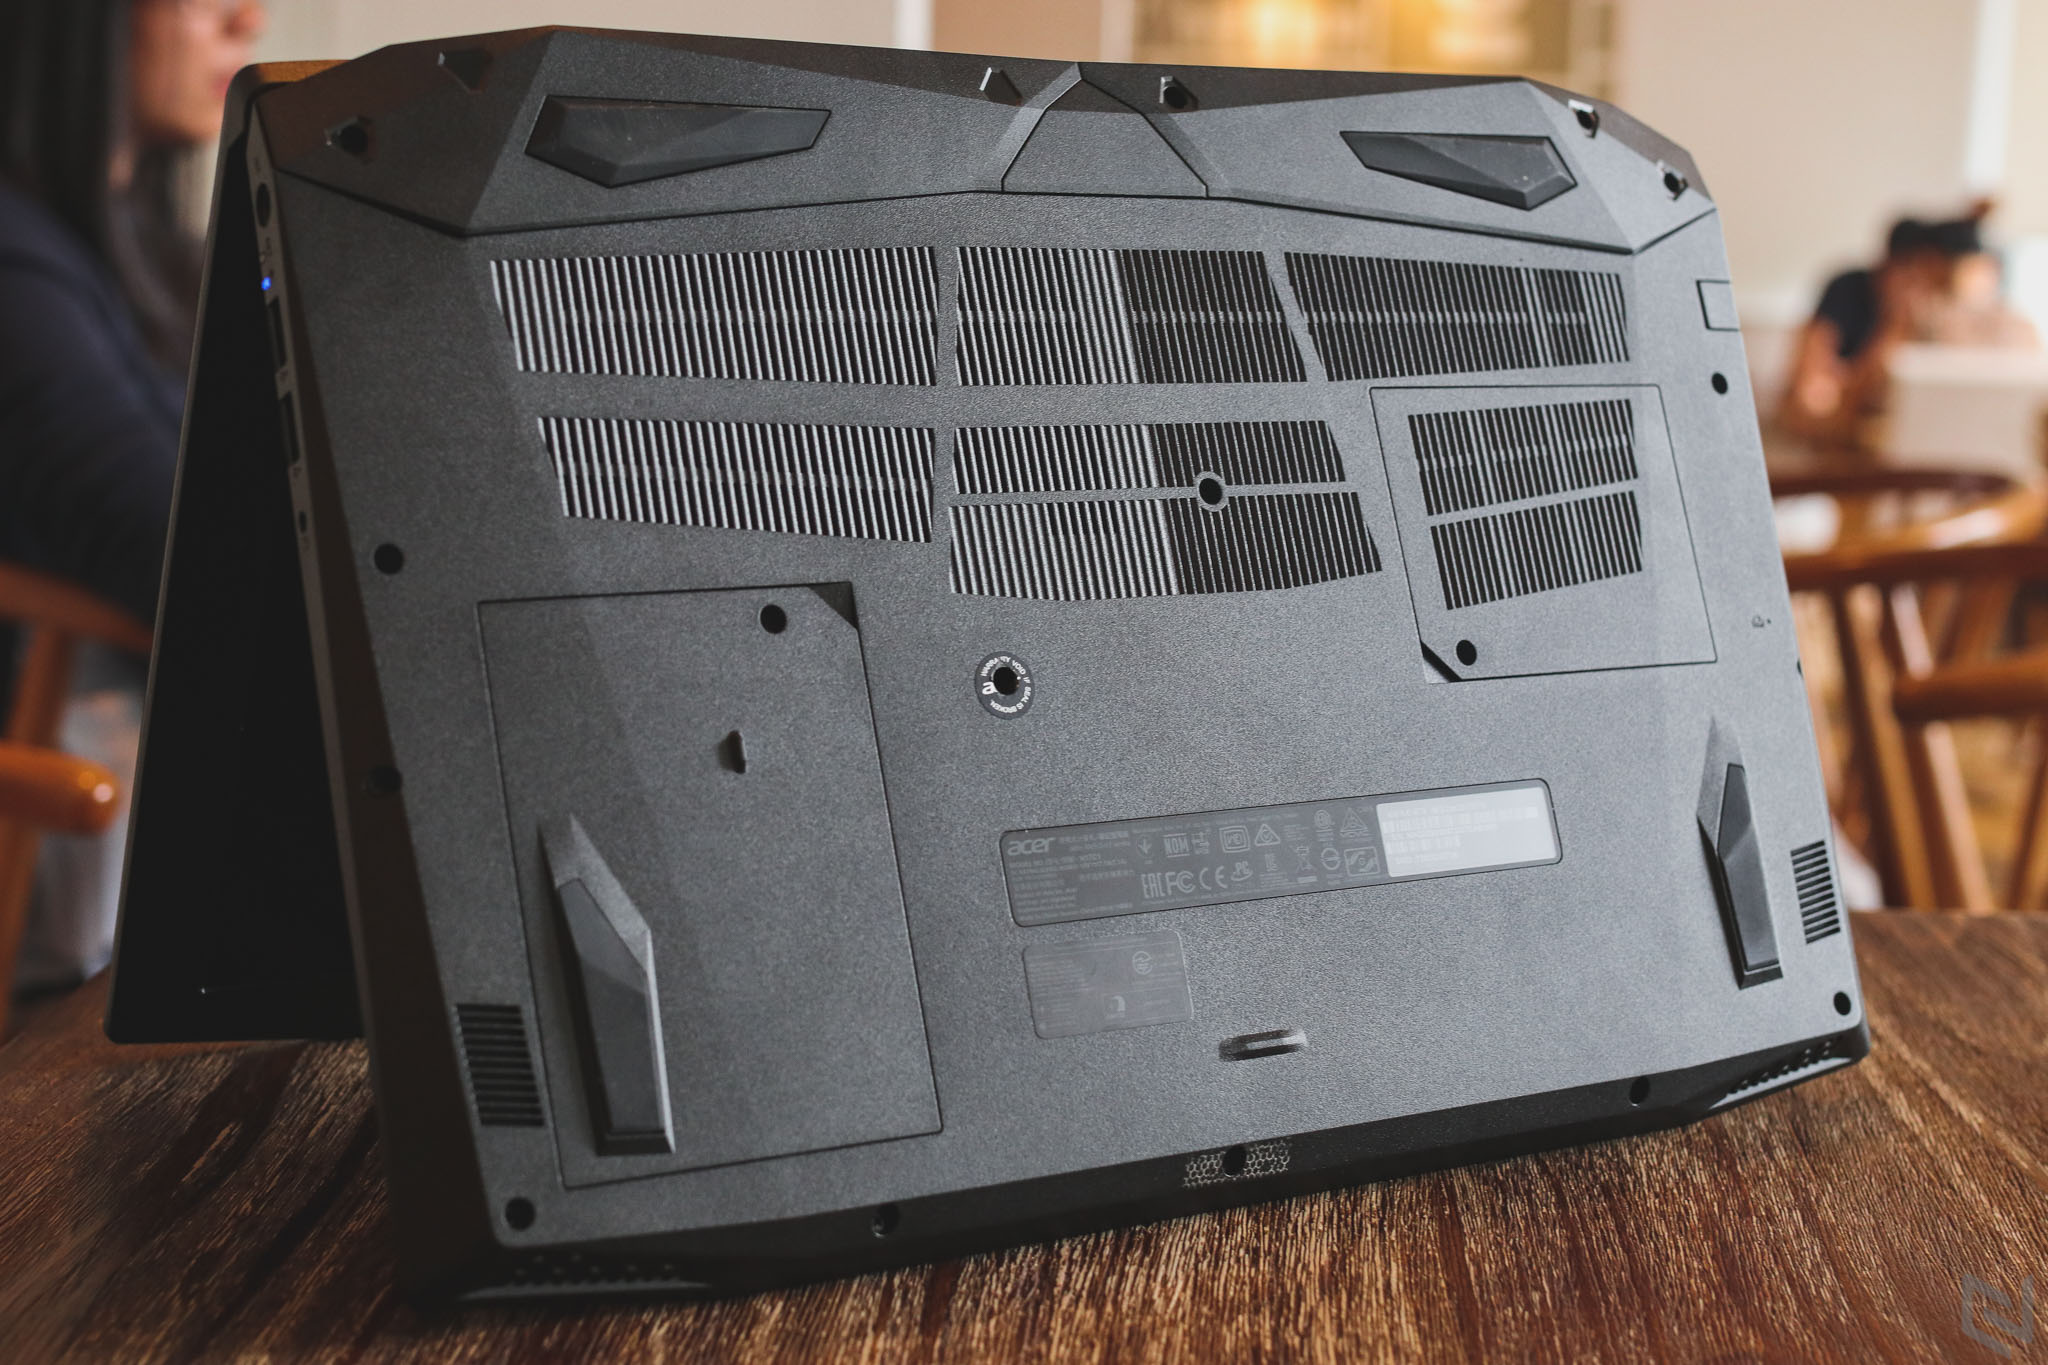 Đánh giá Acer Nitro 5: Vẫn là chất của Predator, tản nhiệt hiệu quả